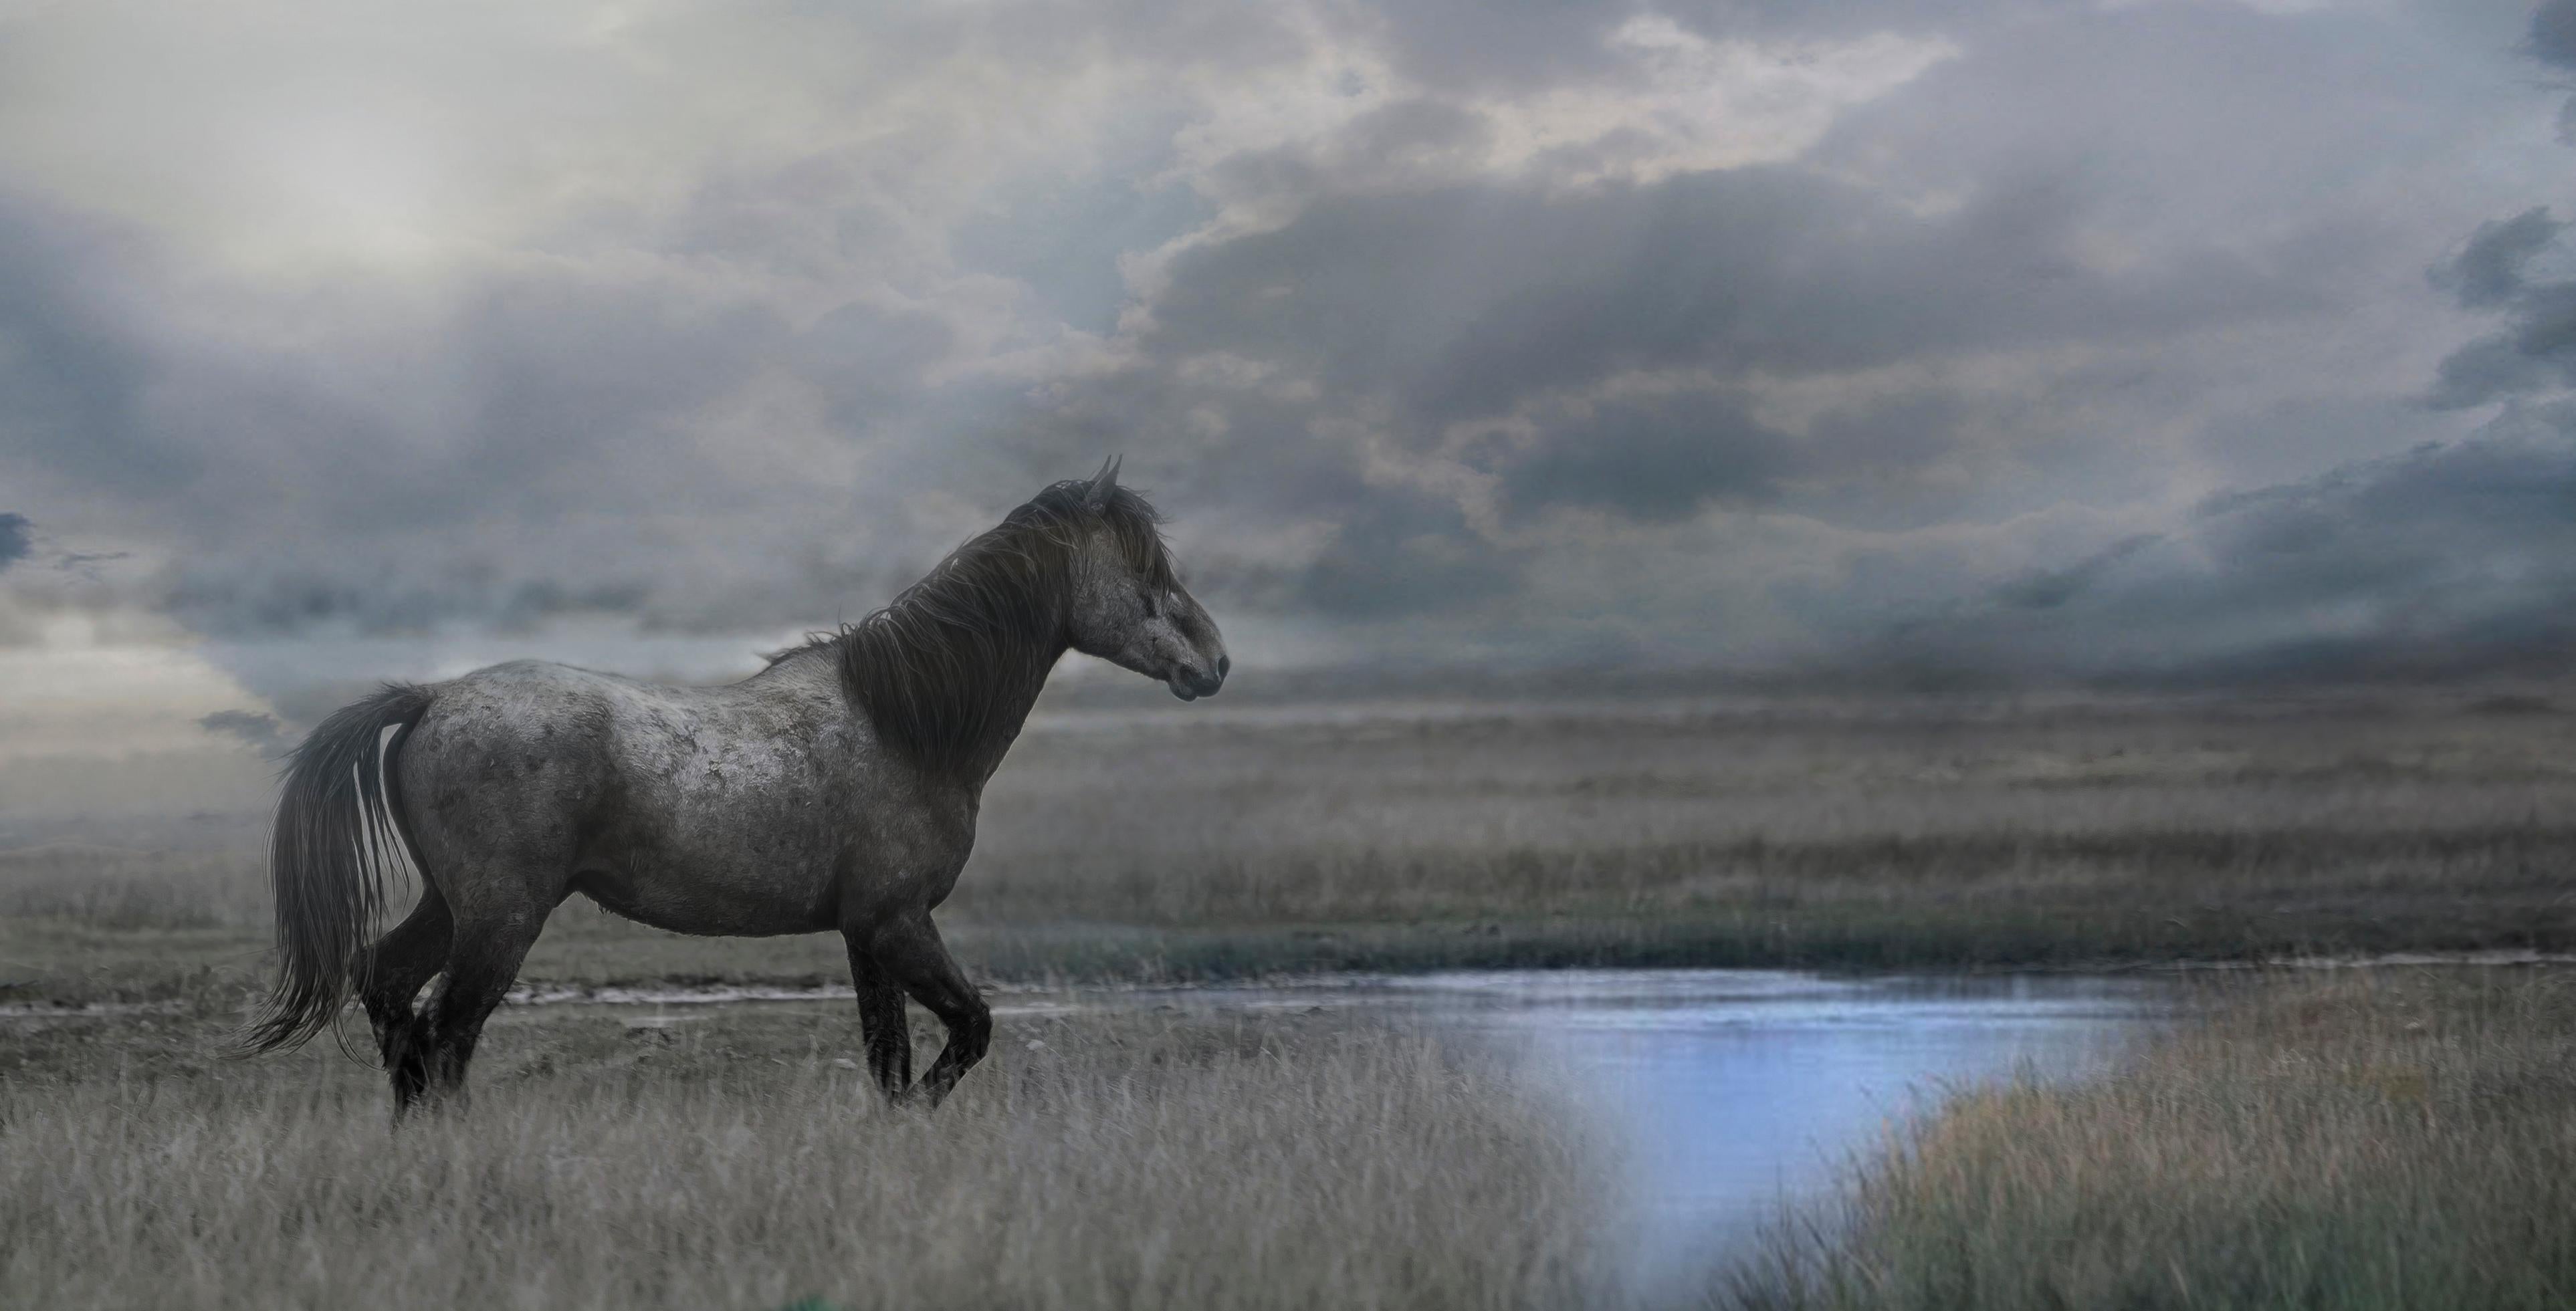 Color Photograph Shane Russeck - « Once Upon a Time in the West » (Une fois dans l'Ouest) 30x60, photographie de cheval sauvage, photographie de mouton